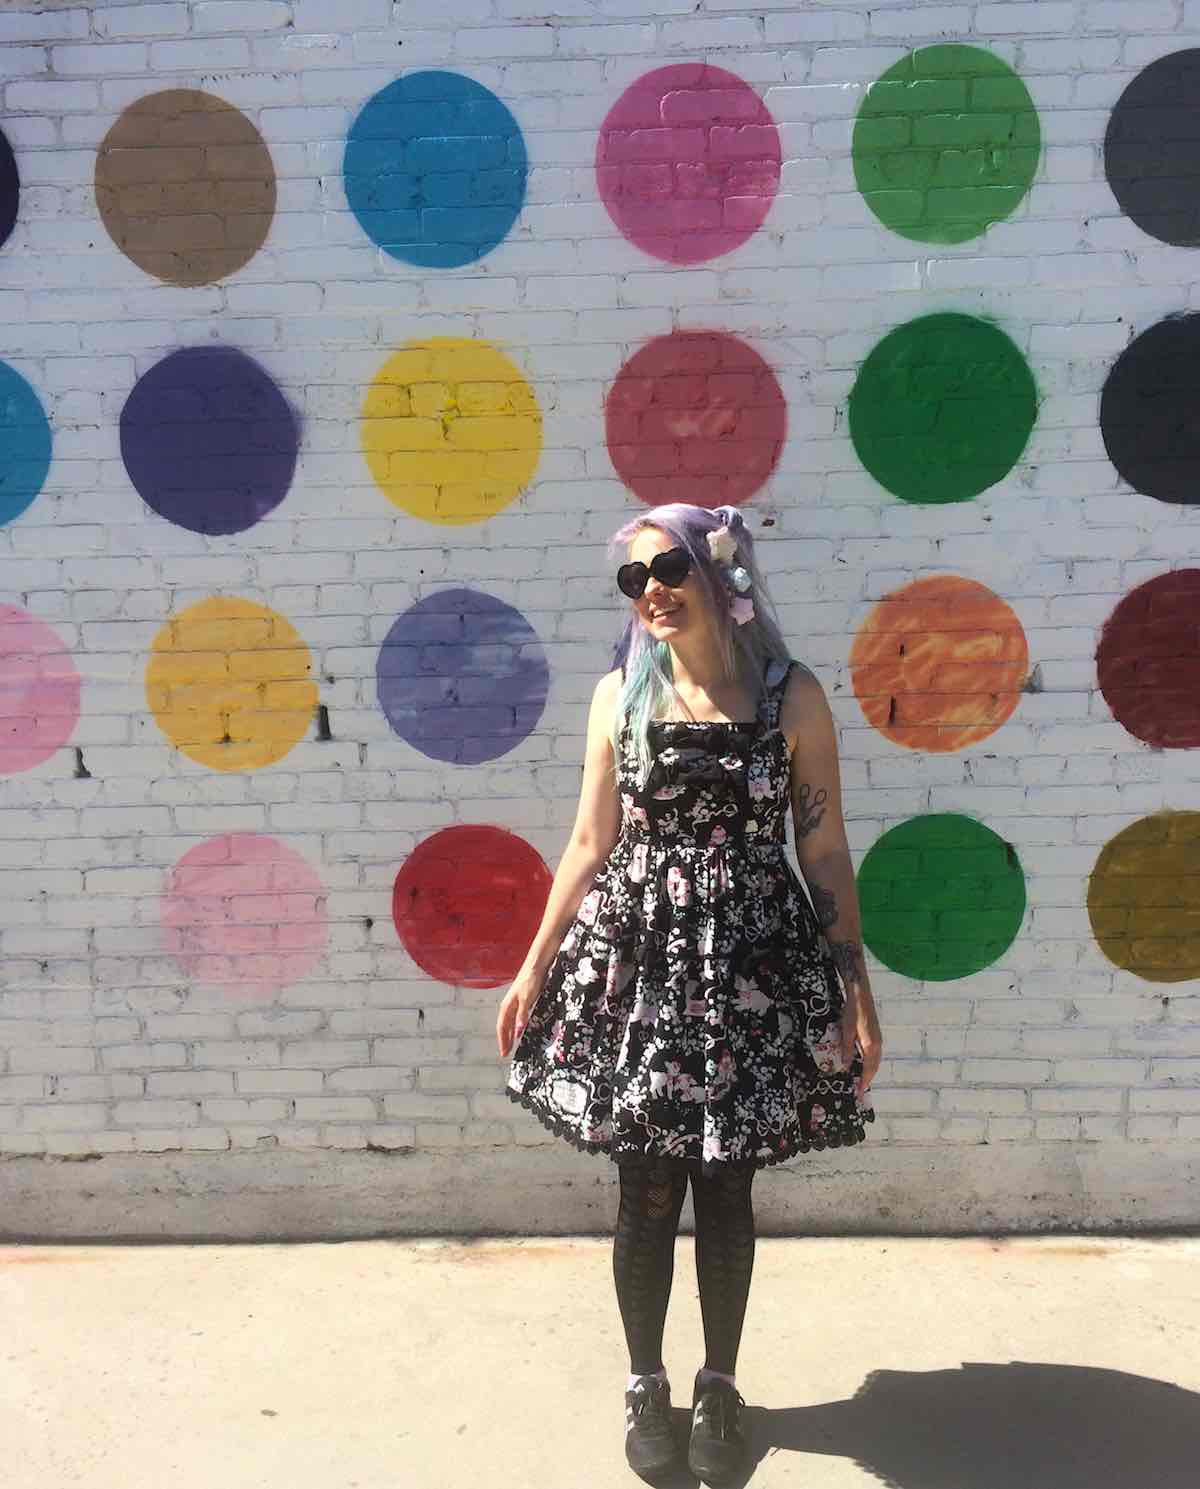 Polka dot wall in downtown LA